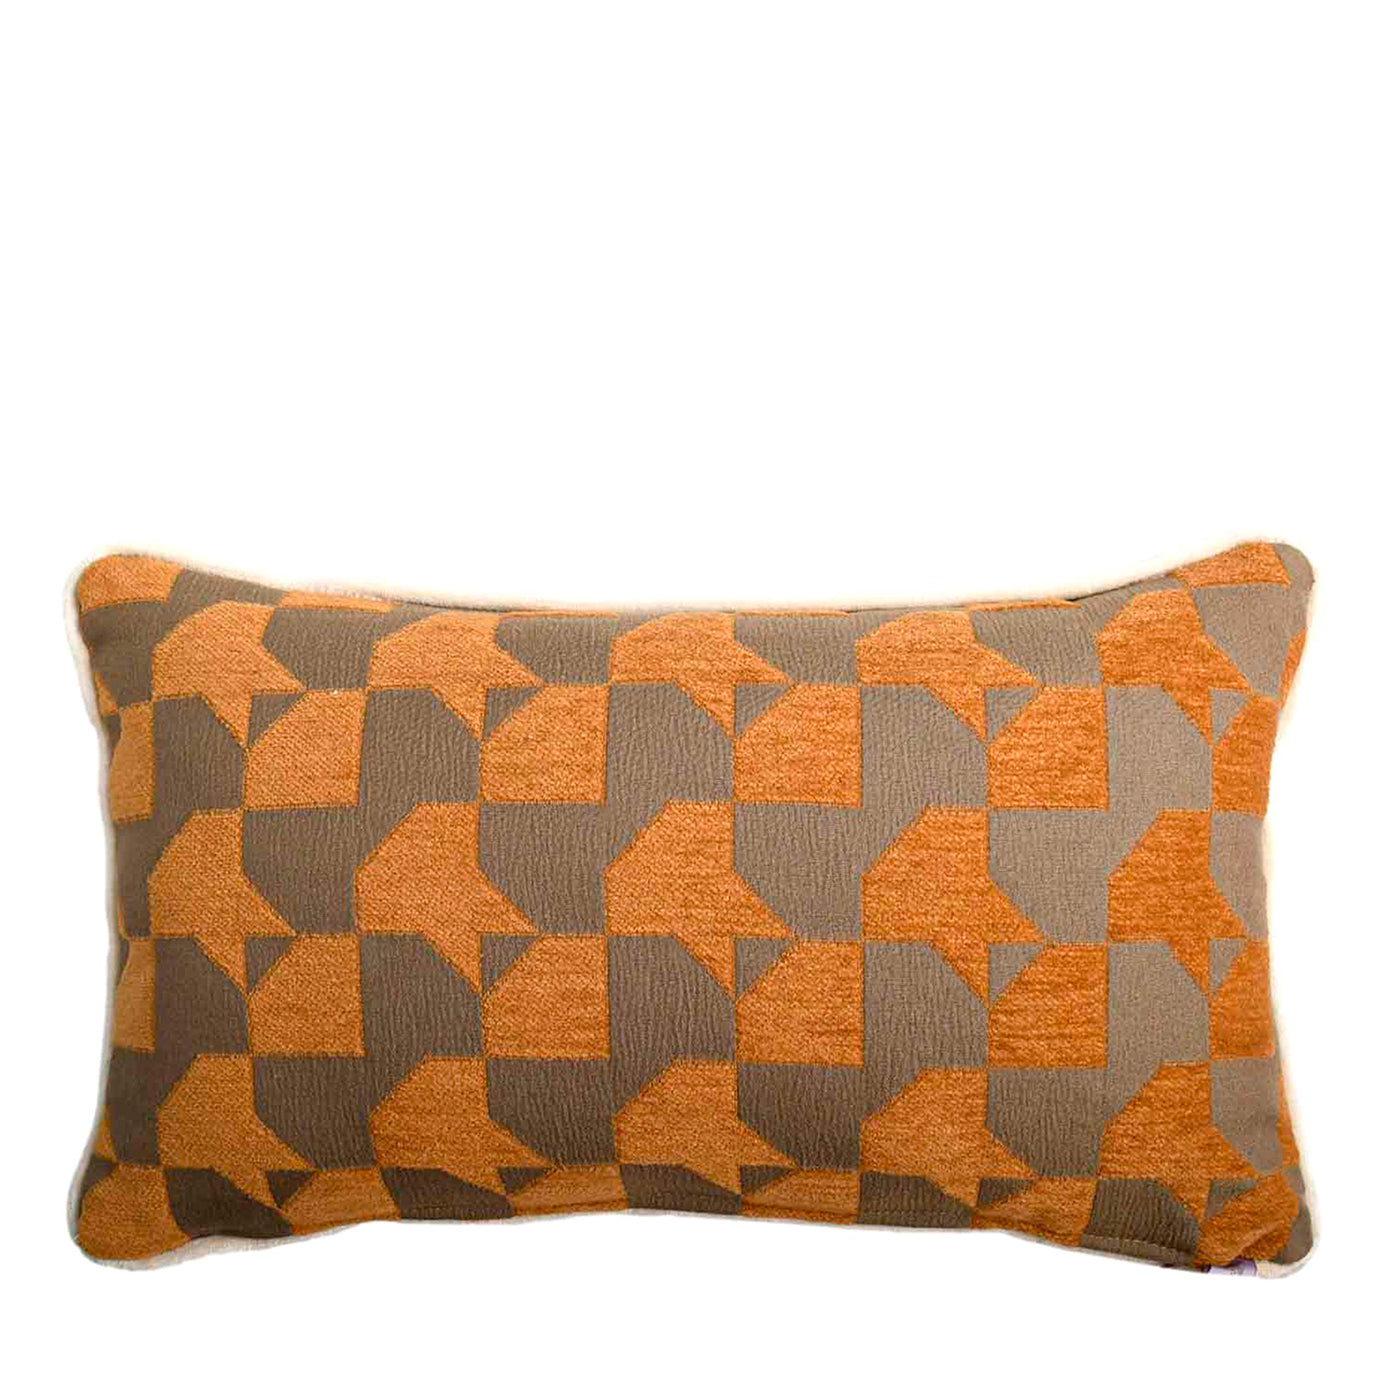 Mustard Longue Cushion in Pied-De-Poule jacquard fabric - Main view